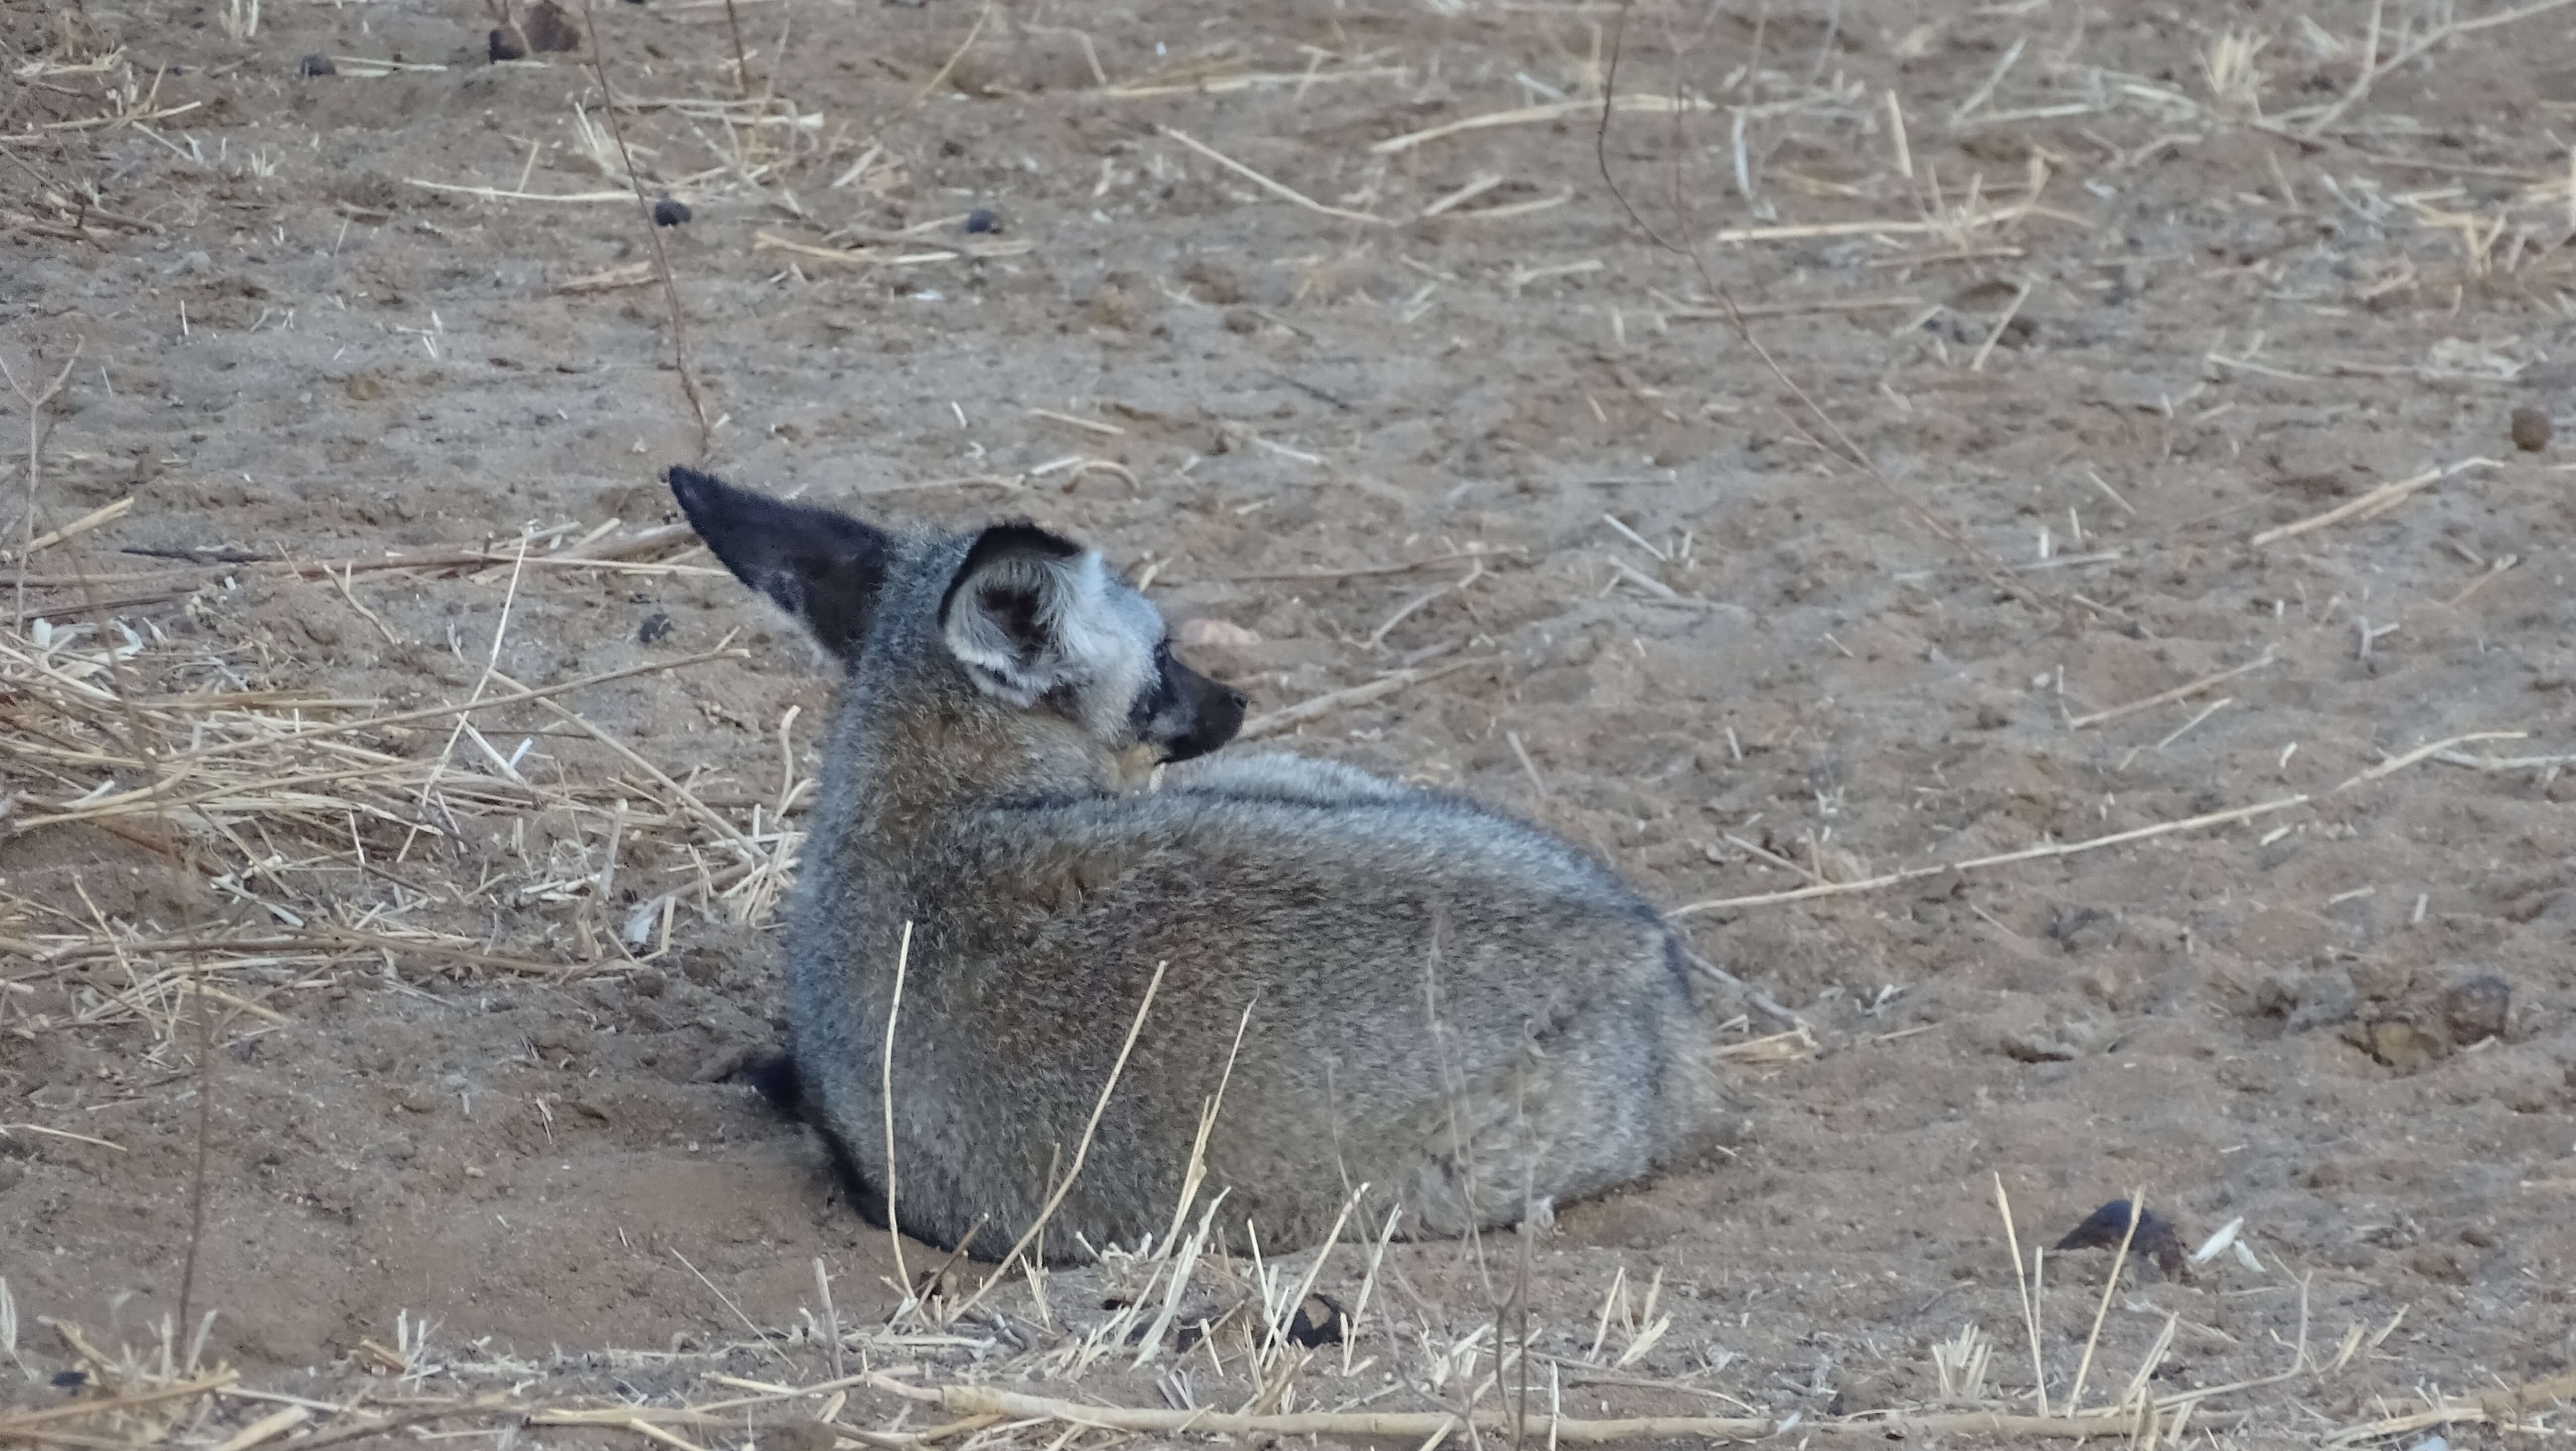 Bat eared fox in Tanzania